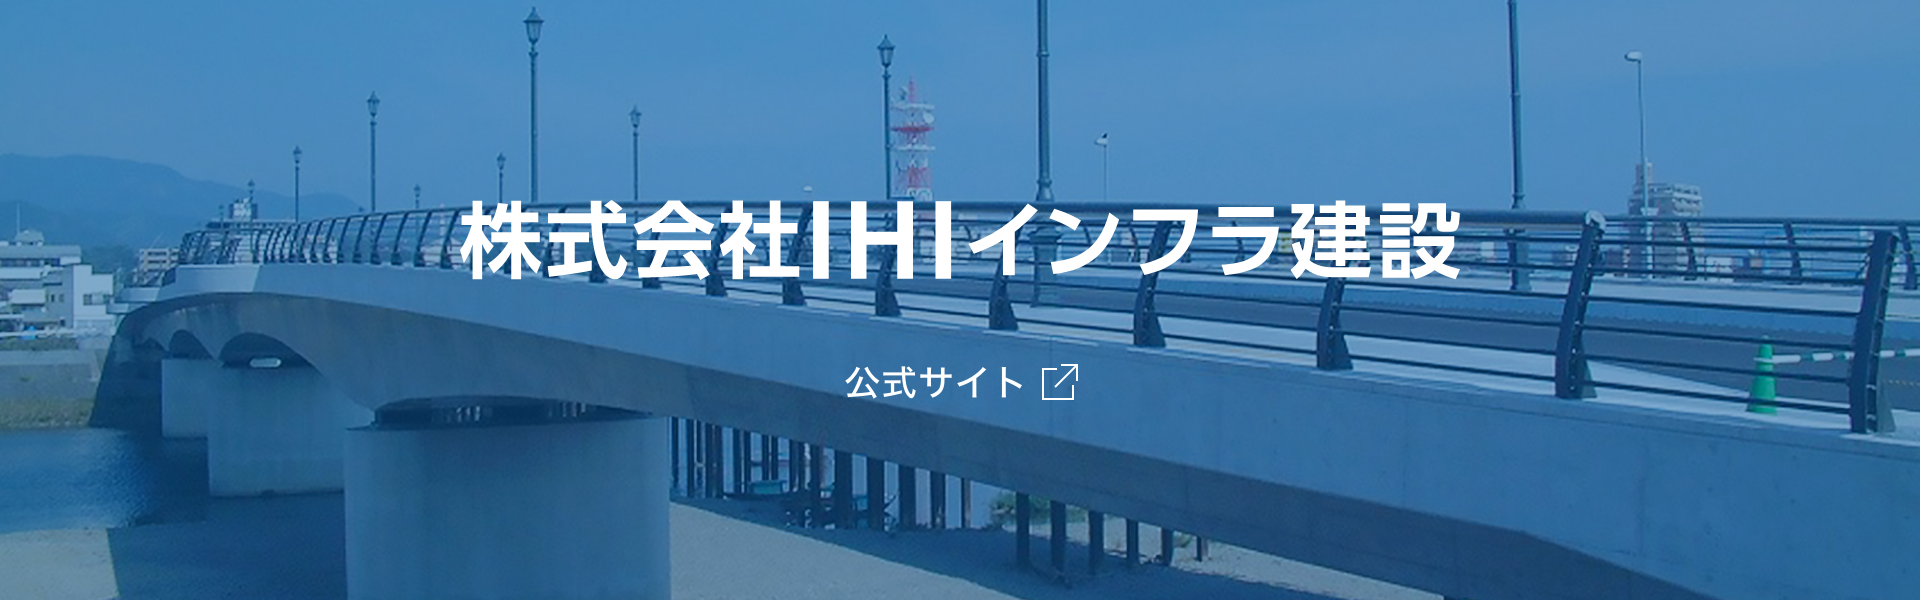 株式会社IHIインフラ建設 公式サイト